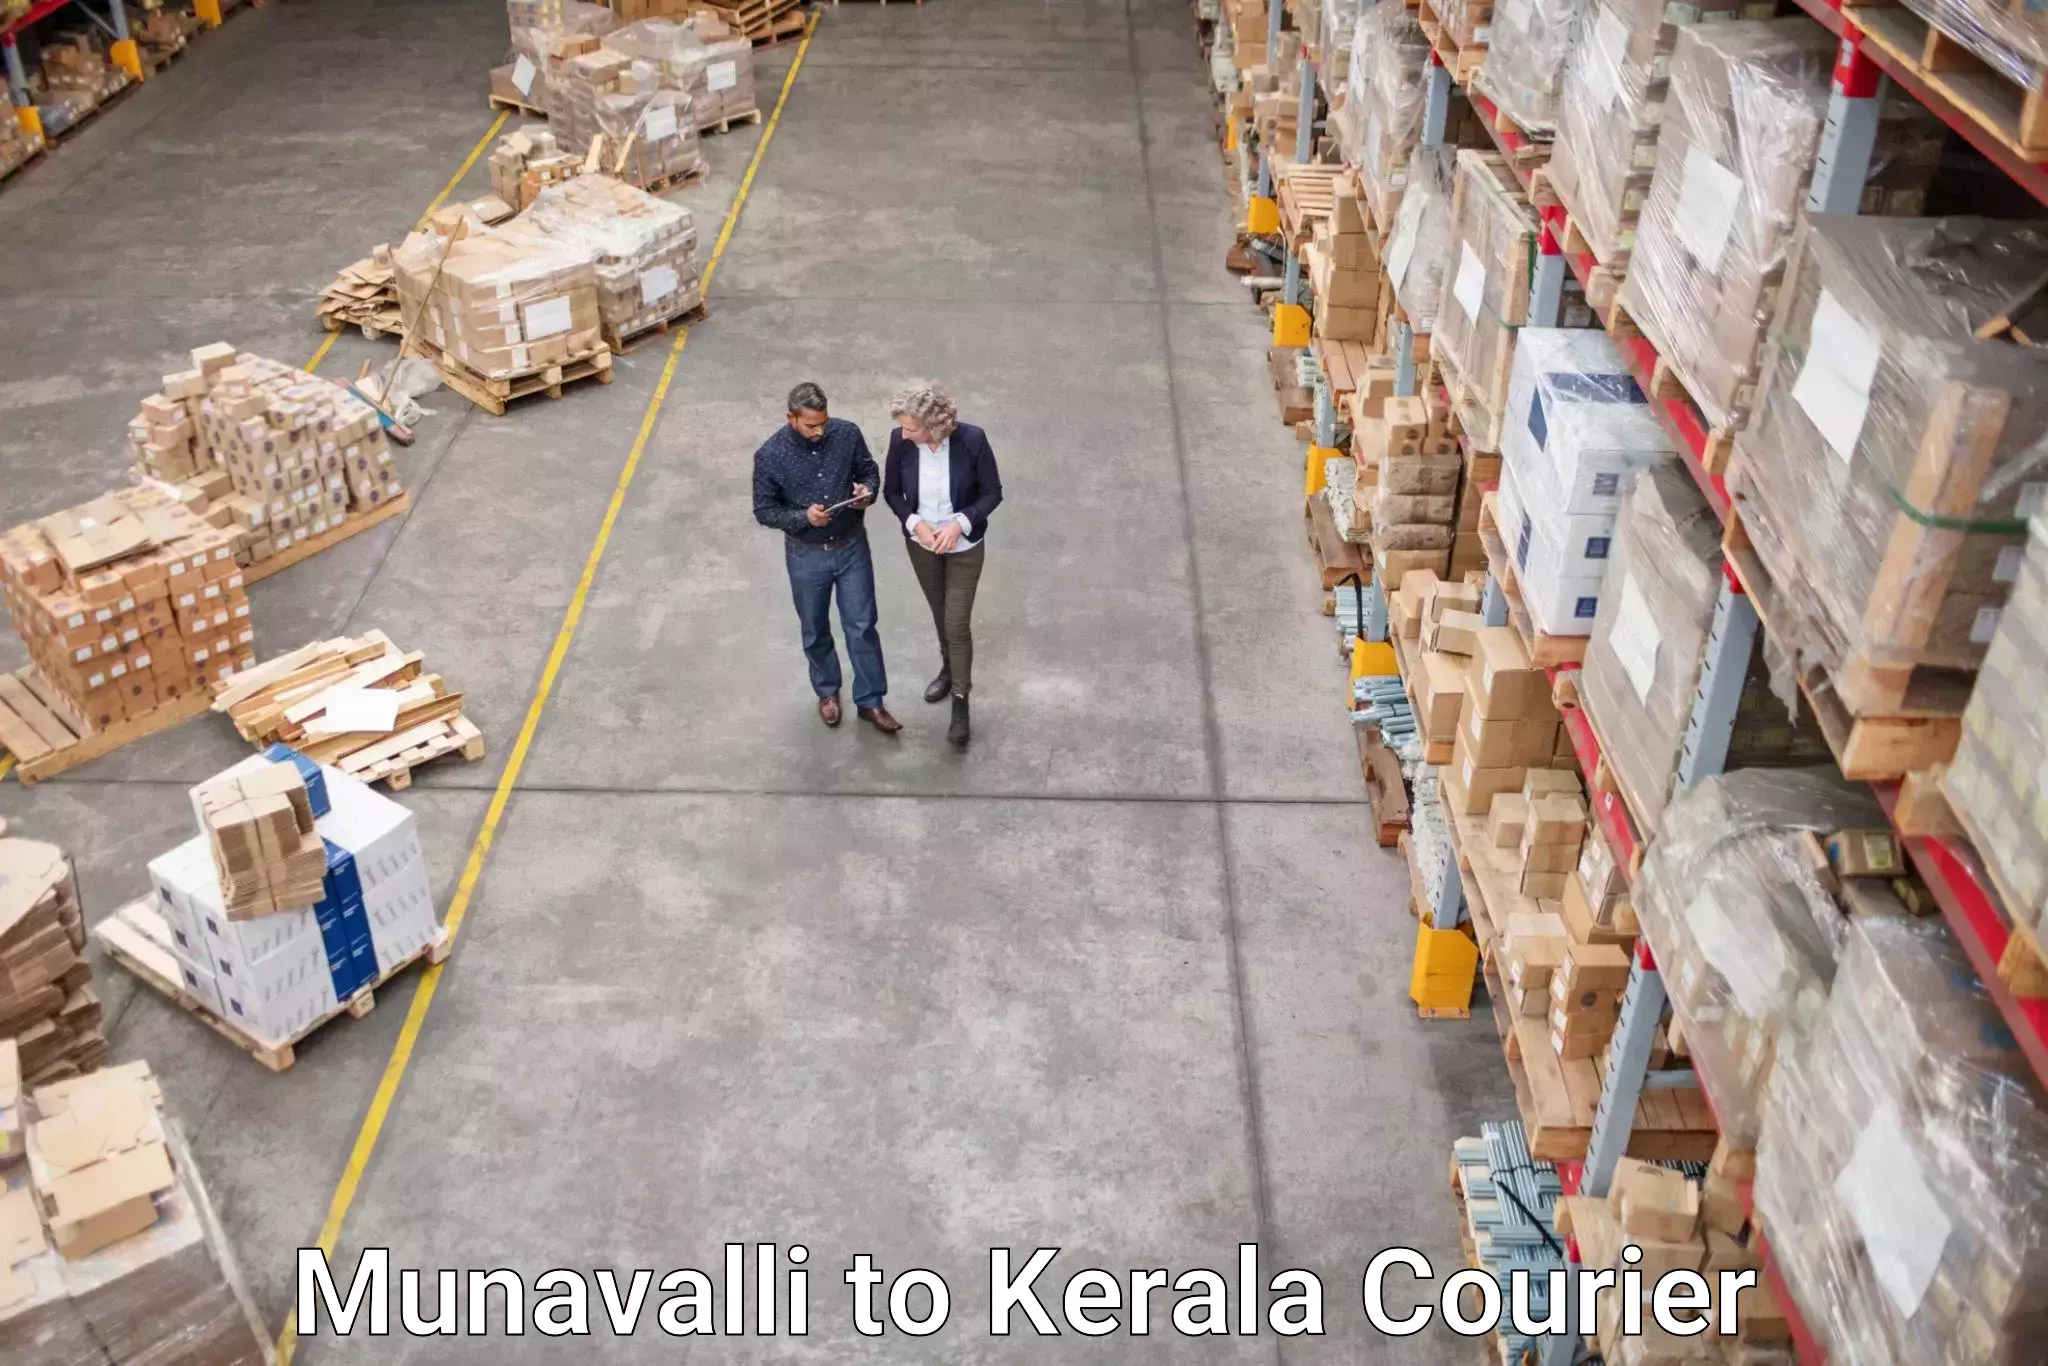 Digital courier platforms Munavalli to Kerala